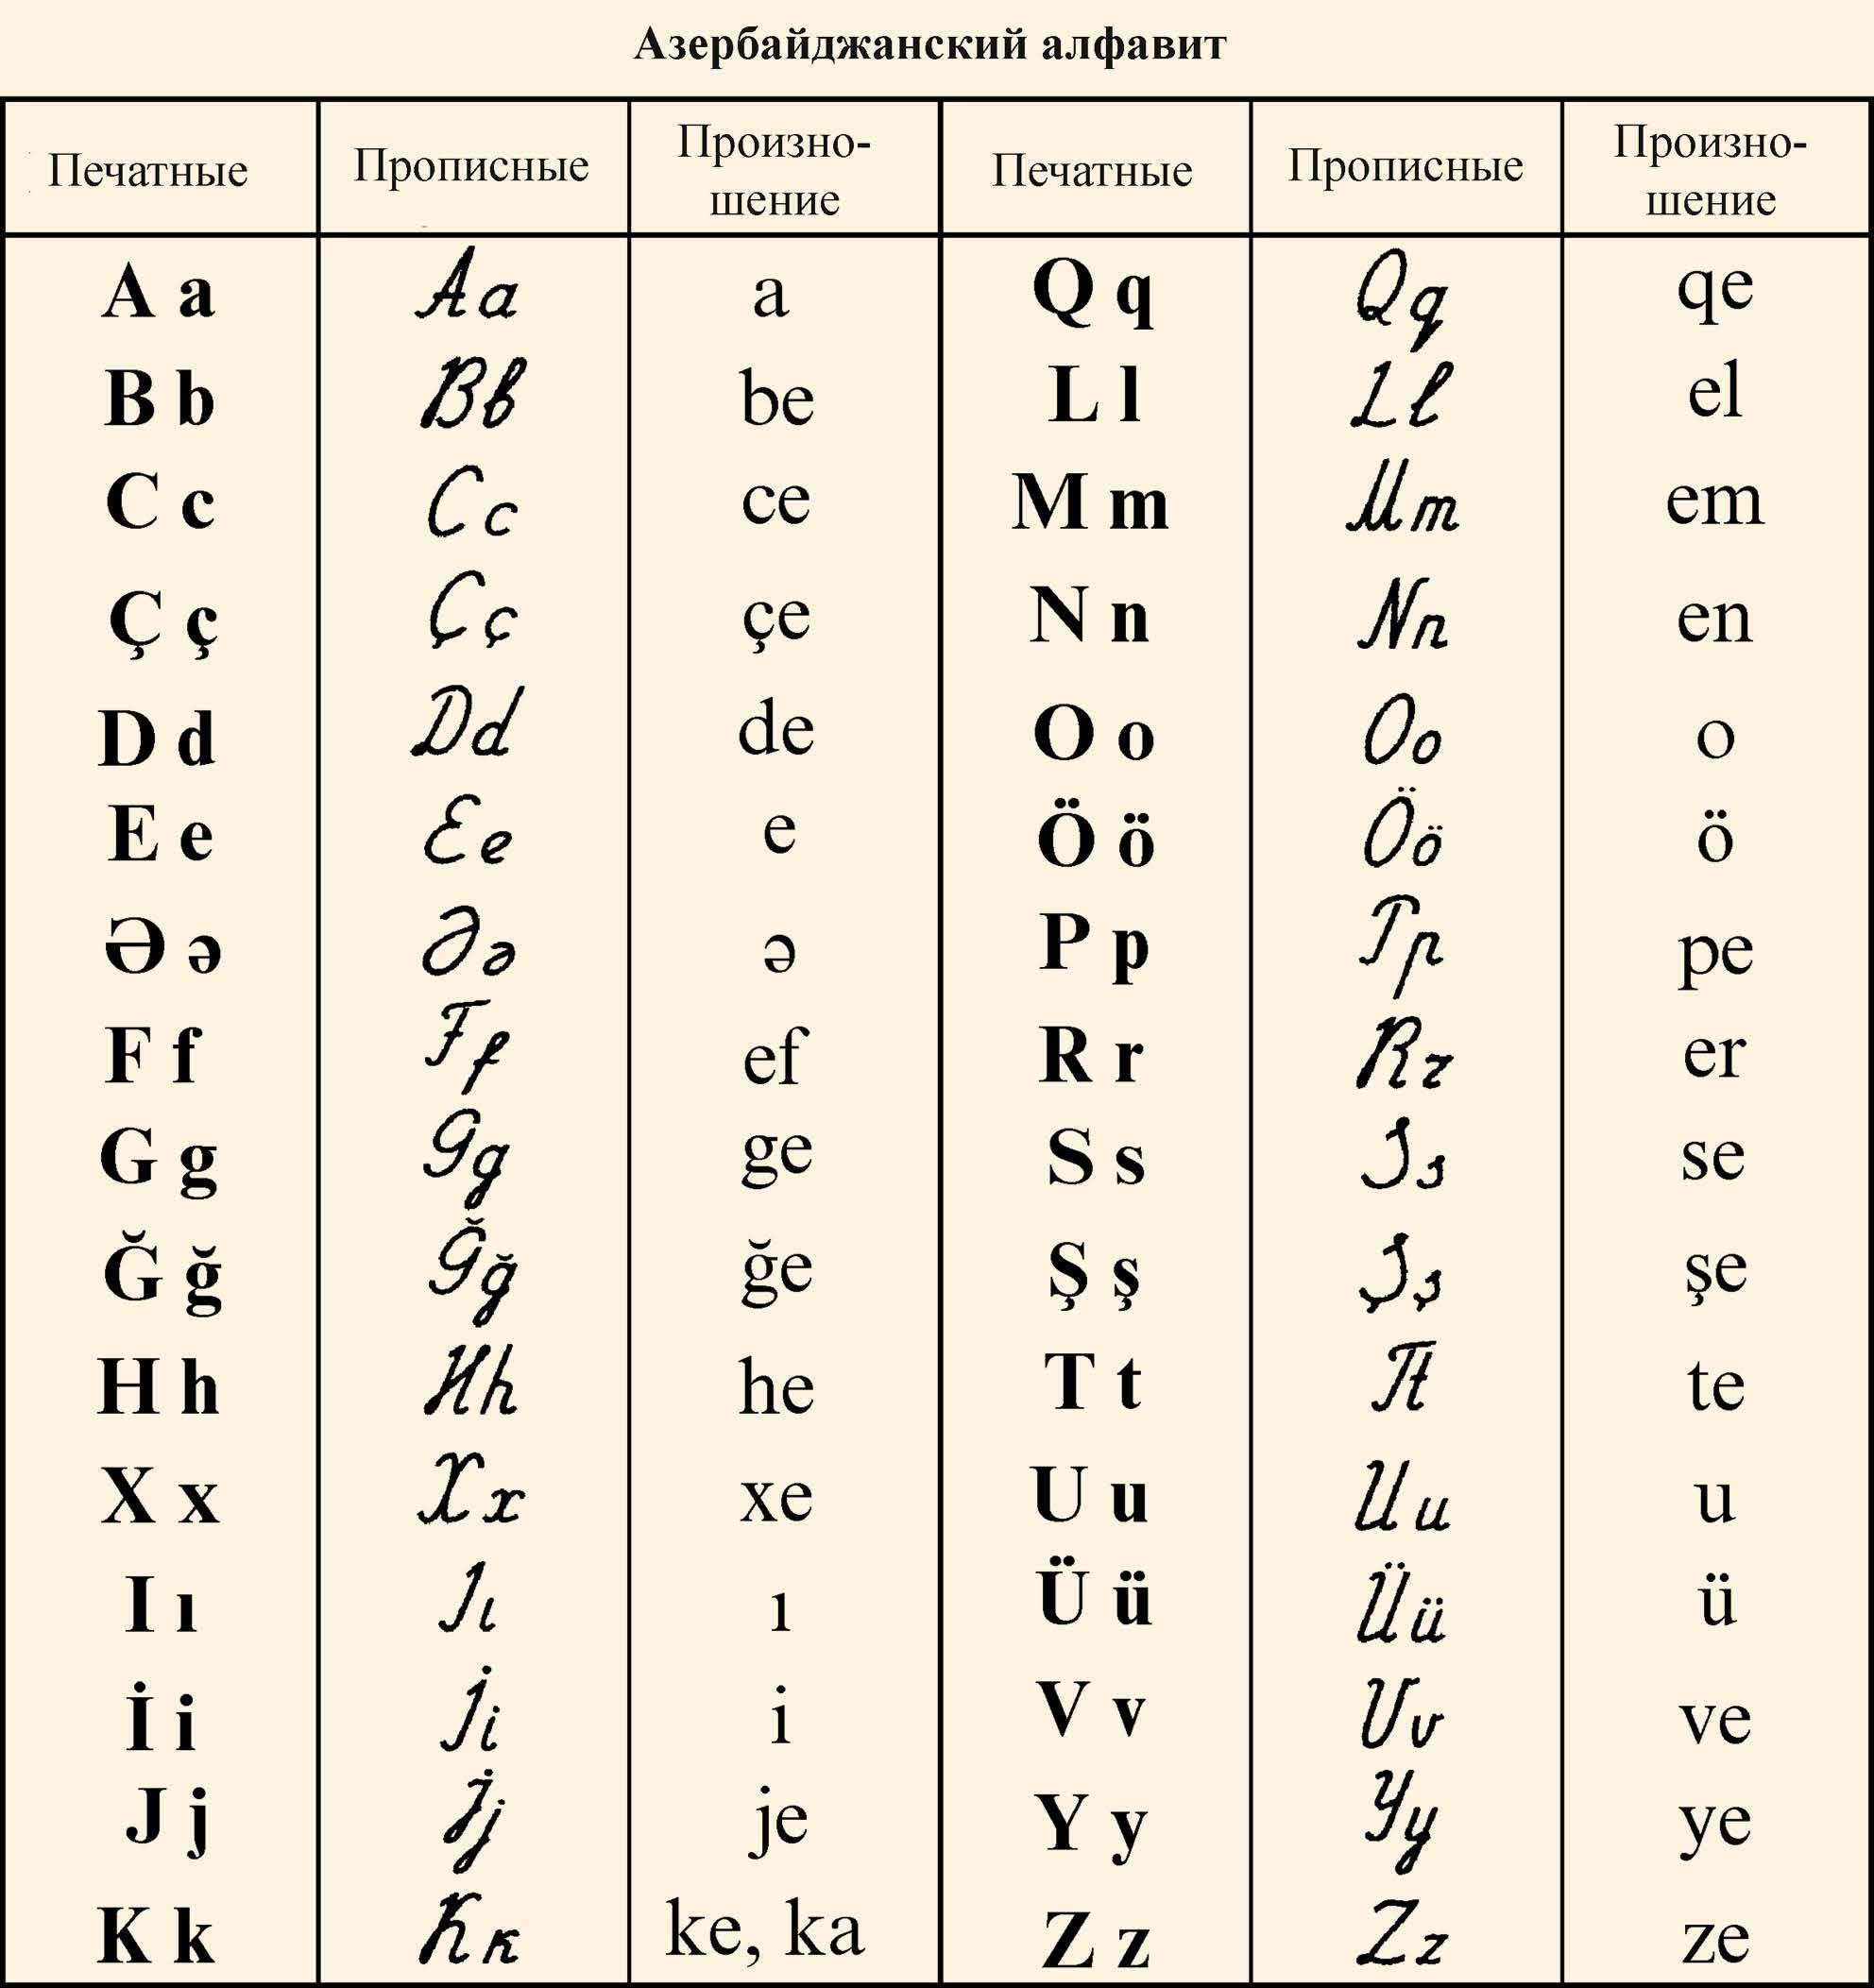 Алфавит азербайджанского языка